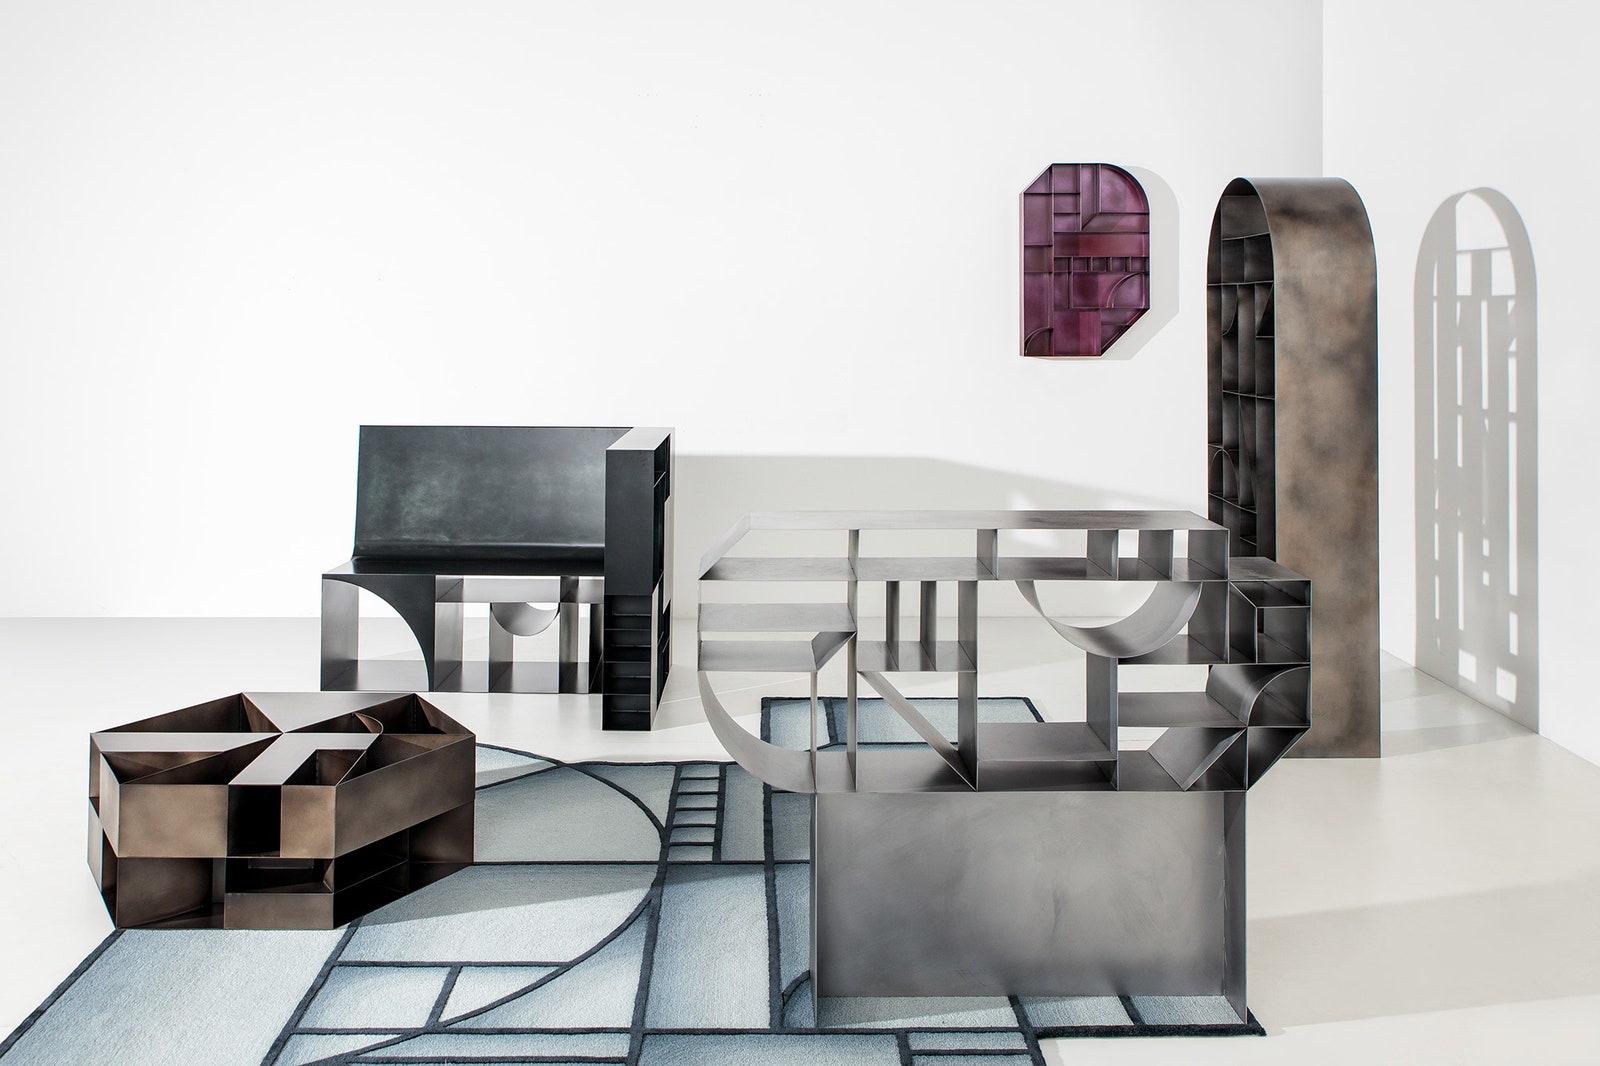 Серия мебели для коллекционеров от студии ZanellatoBortotto